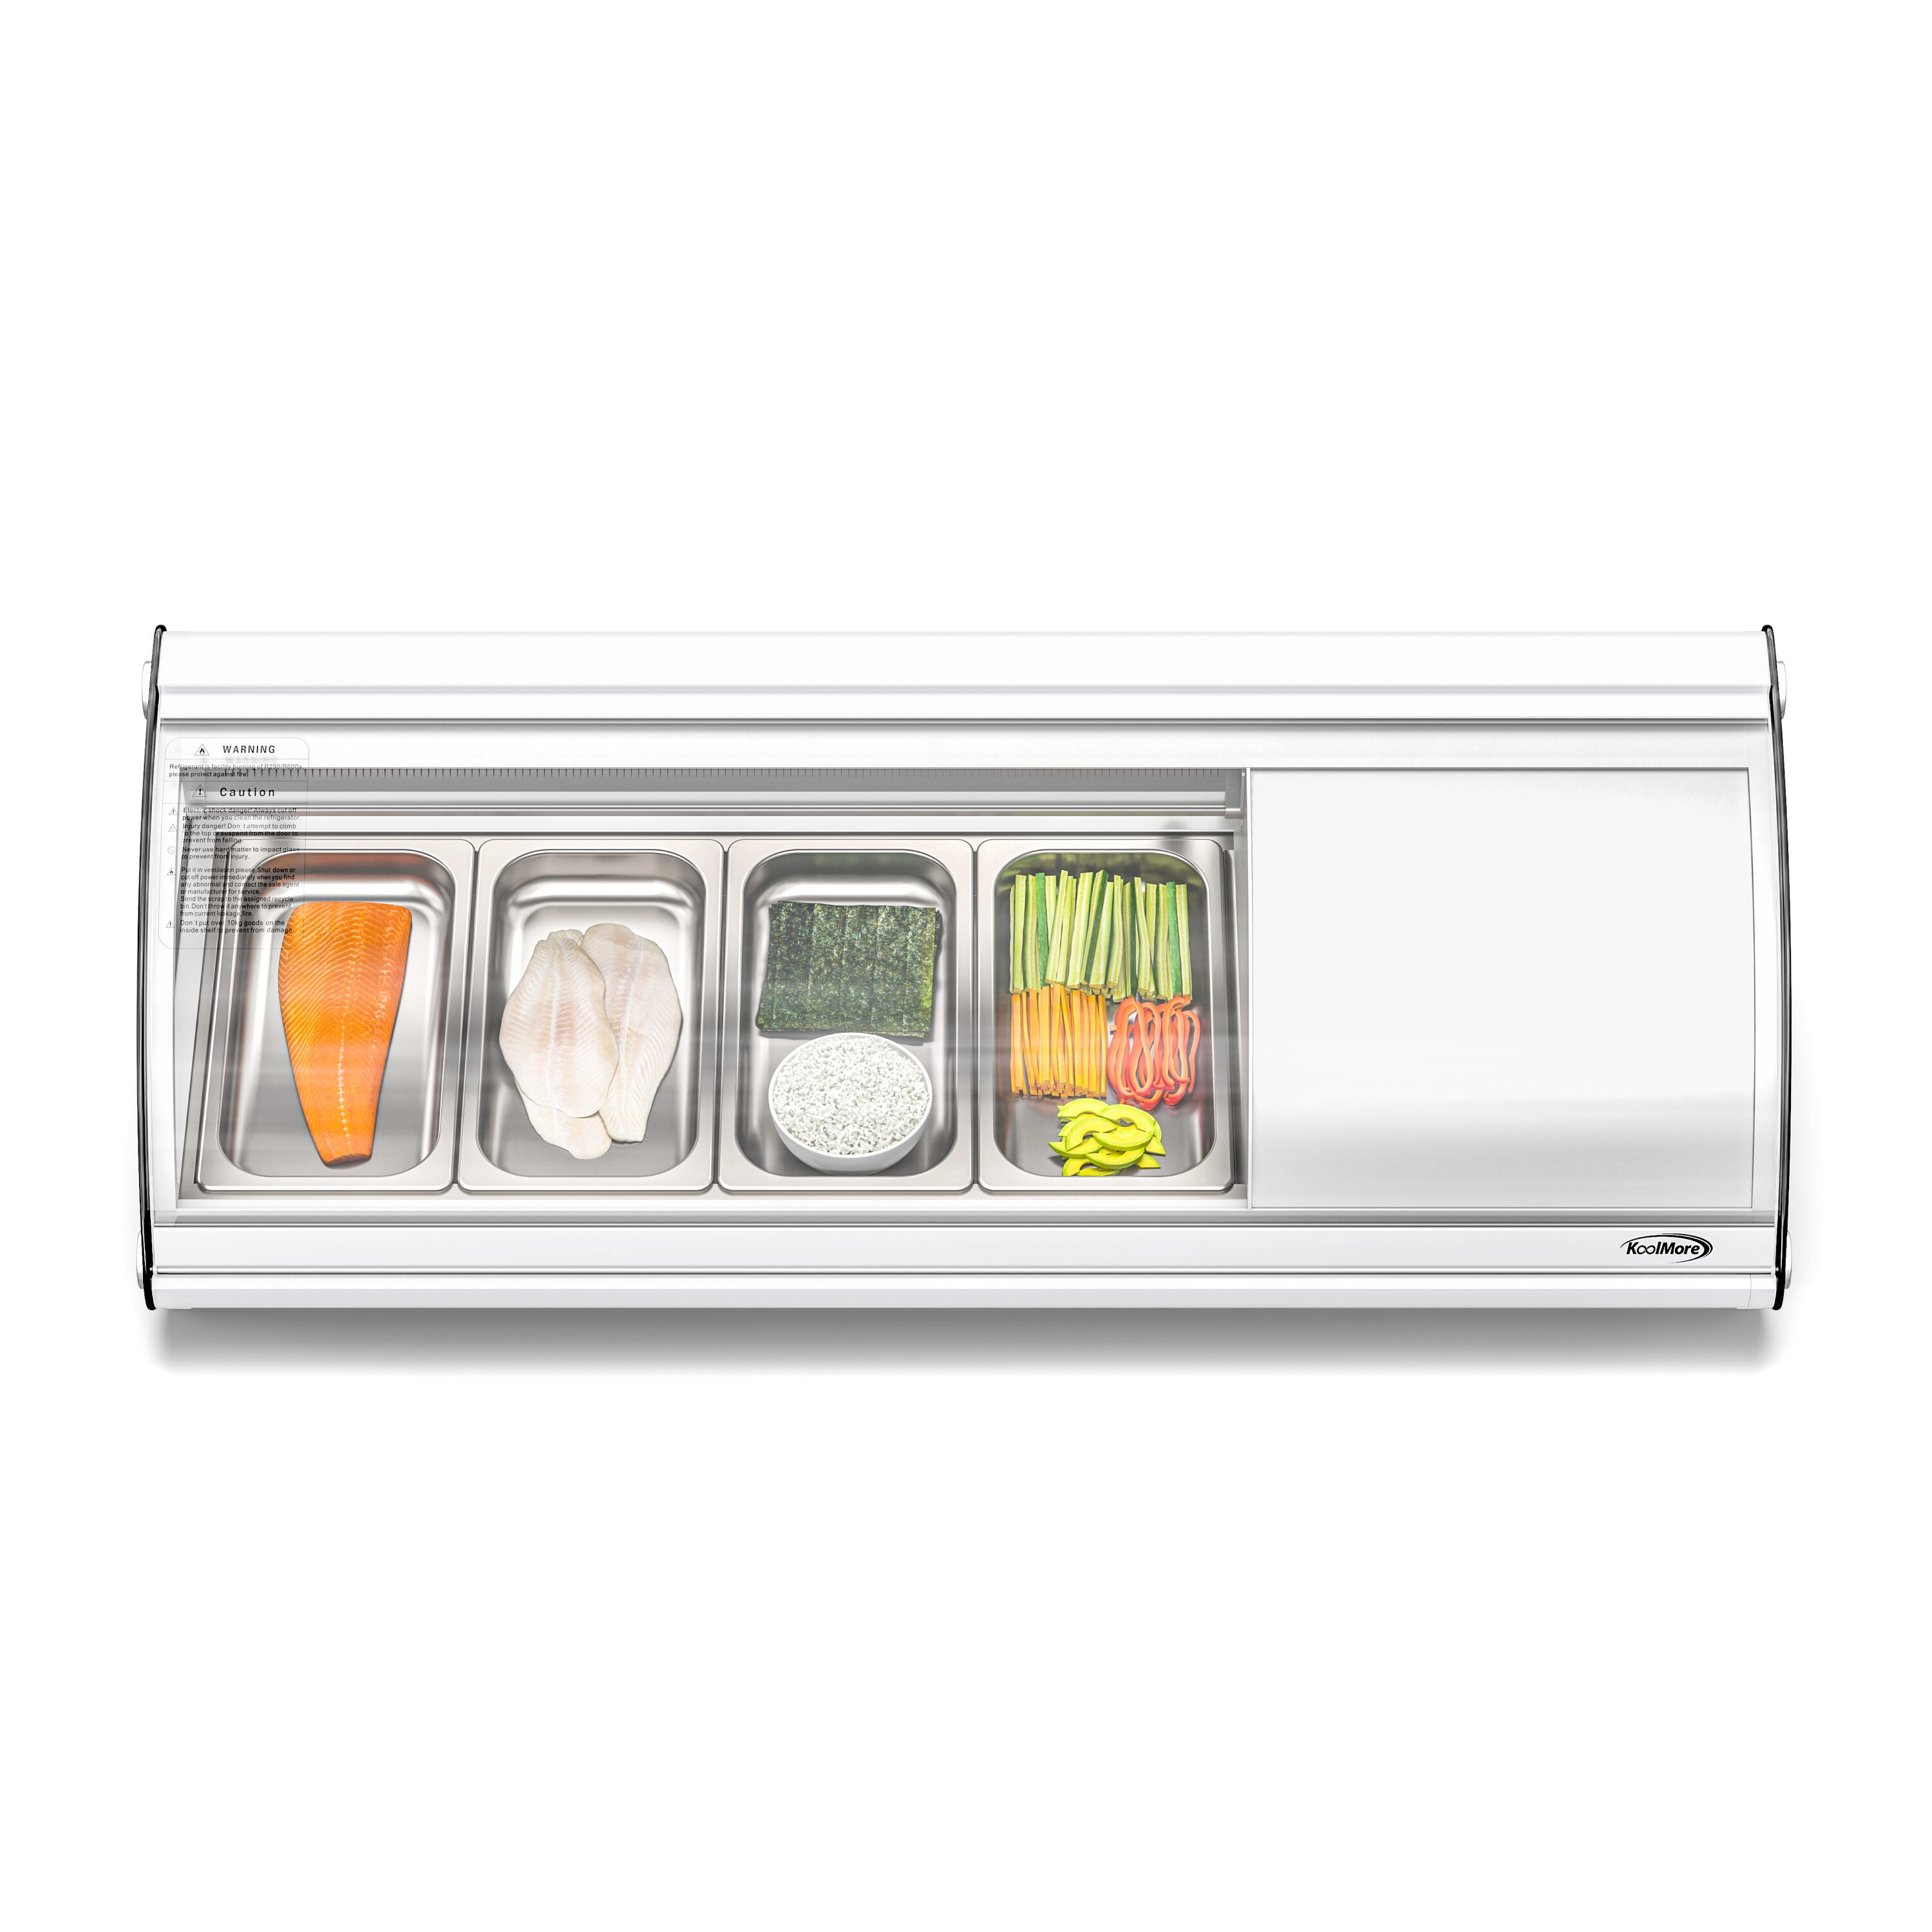 RV Designer E377 Refrigerator Vent Latch, RV Designer, MFG# E377, Motorhome  Refrigerator Fridge Vent Latch